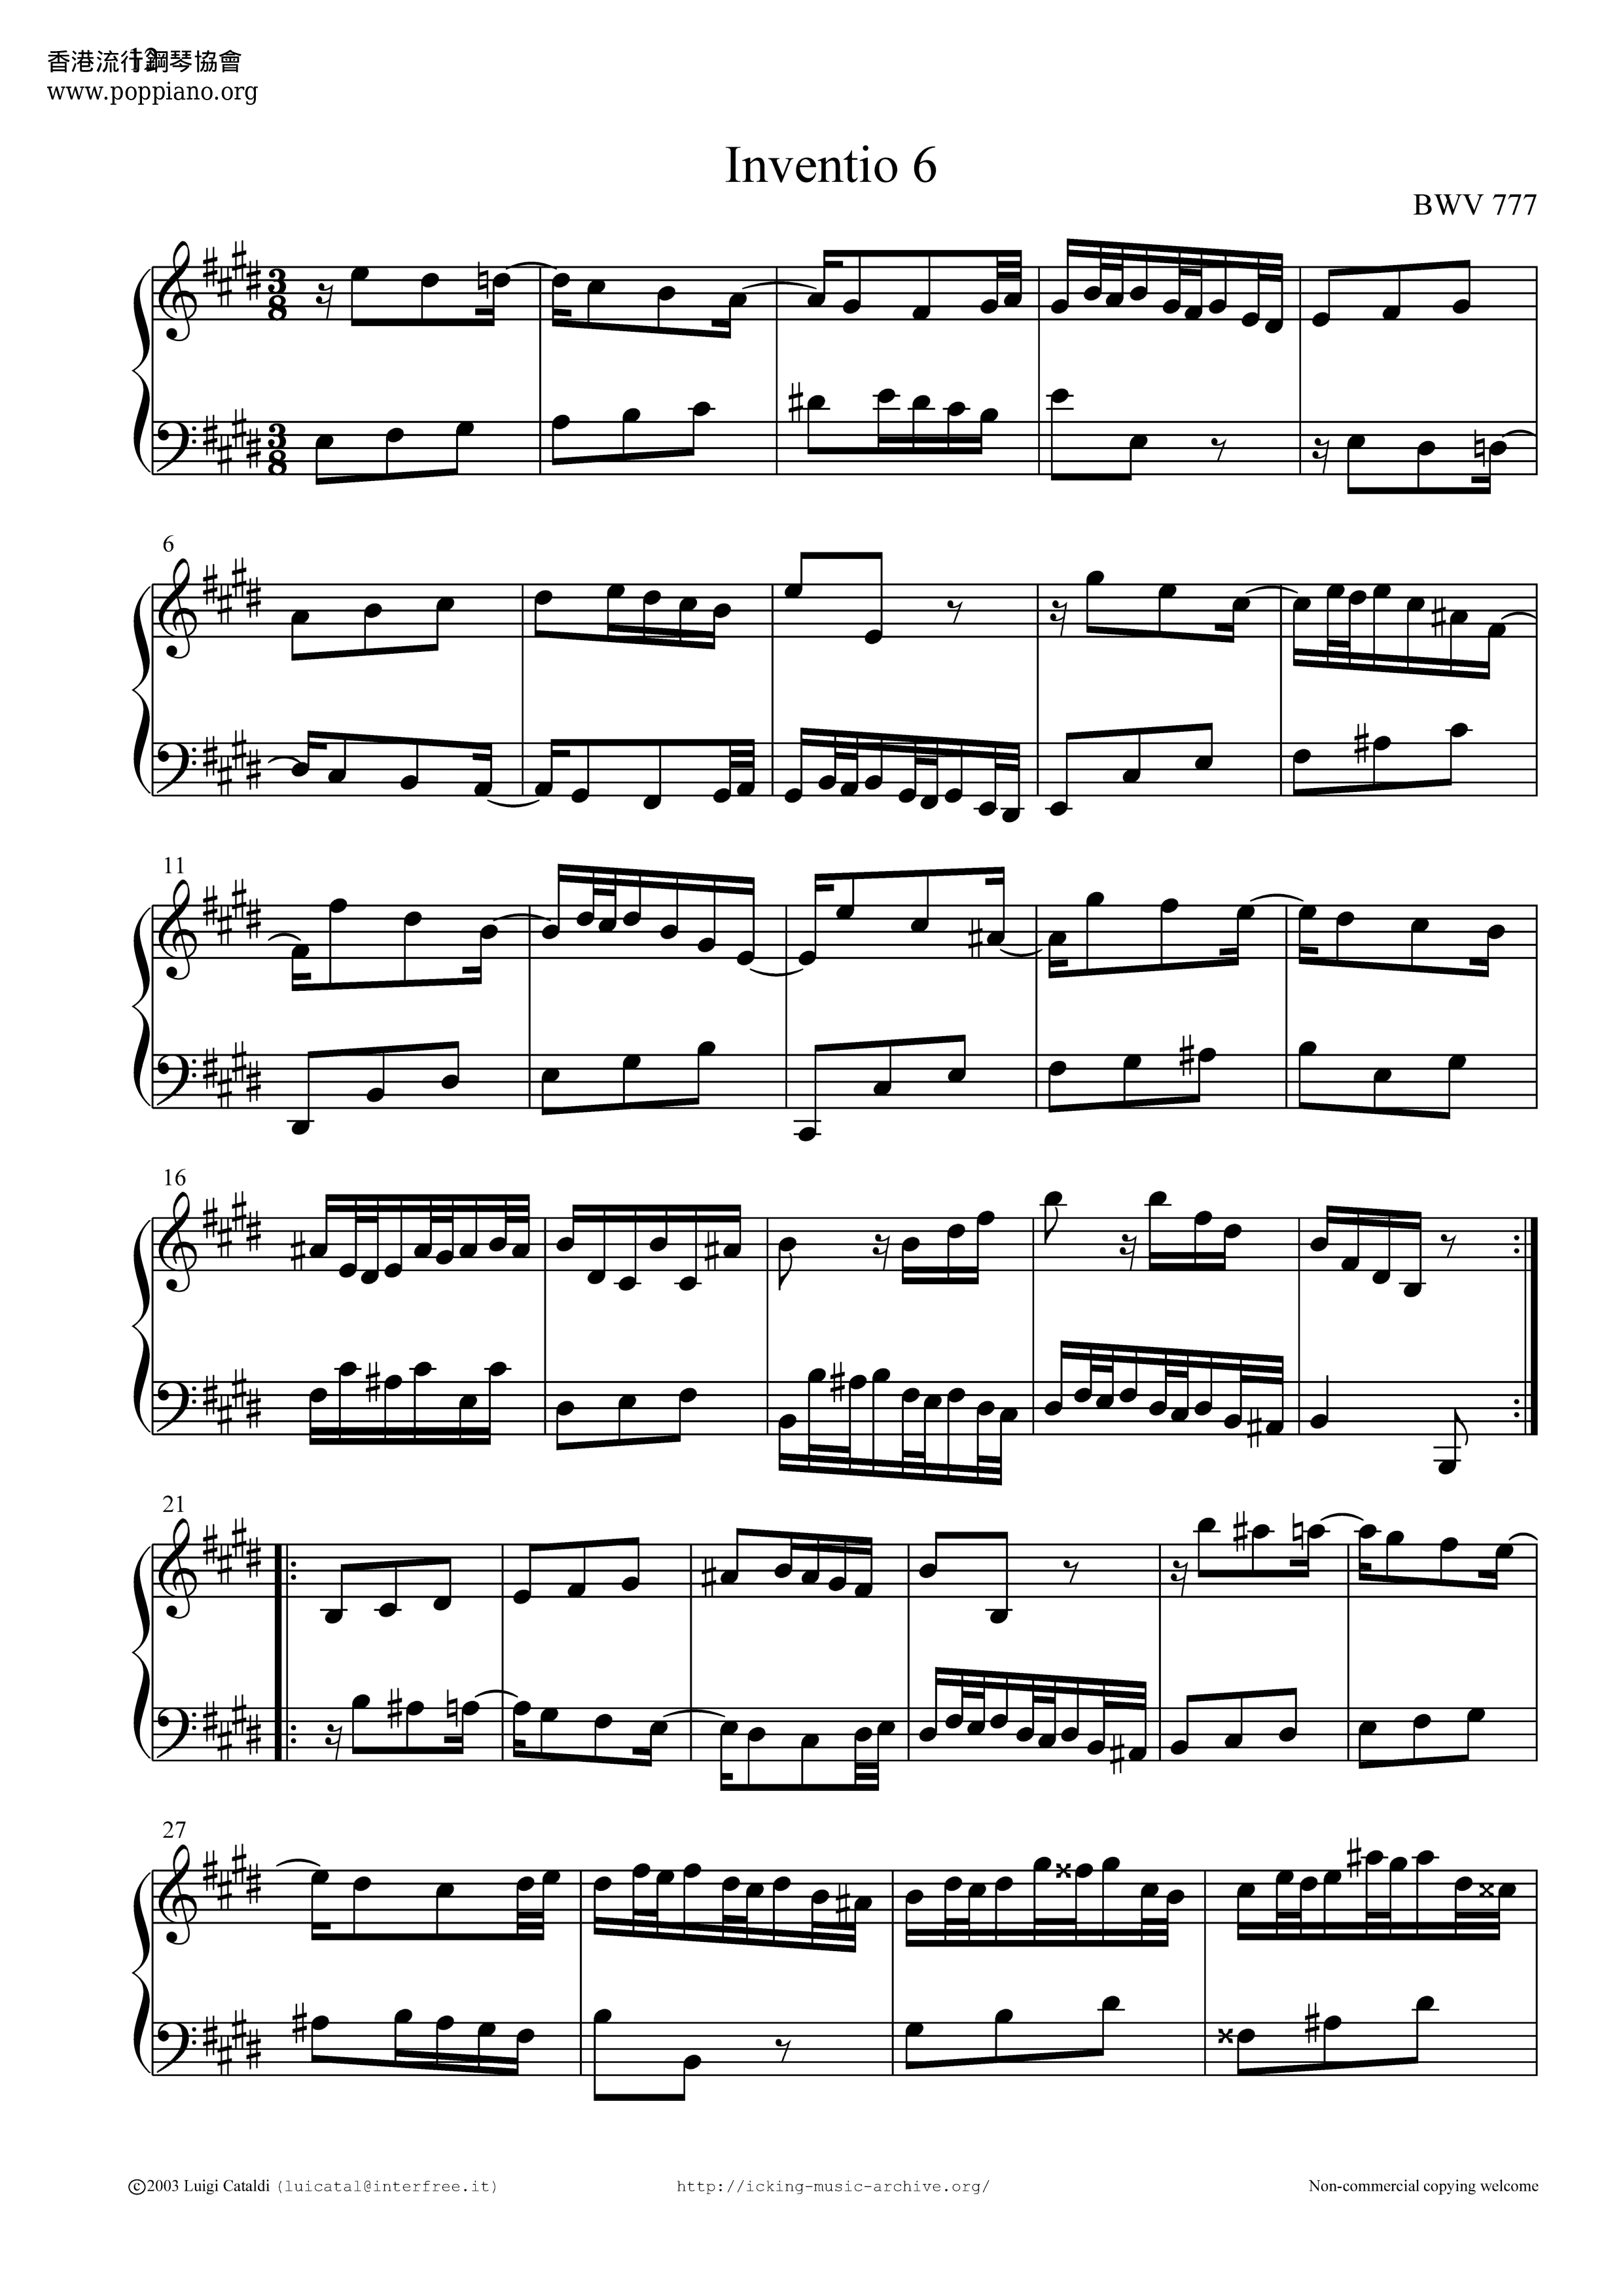 Invention No. 6 in E major BWV 777 Score